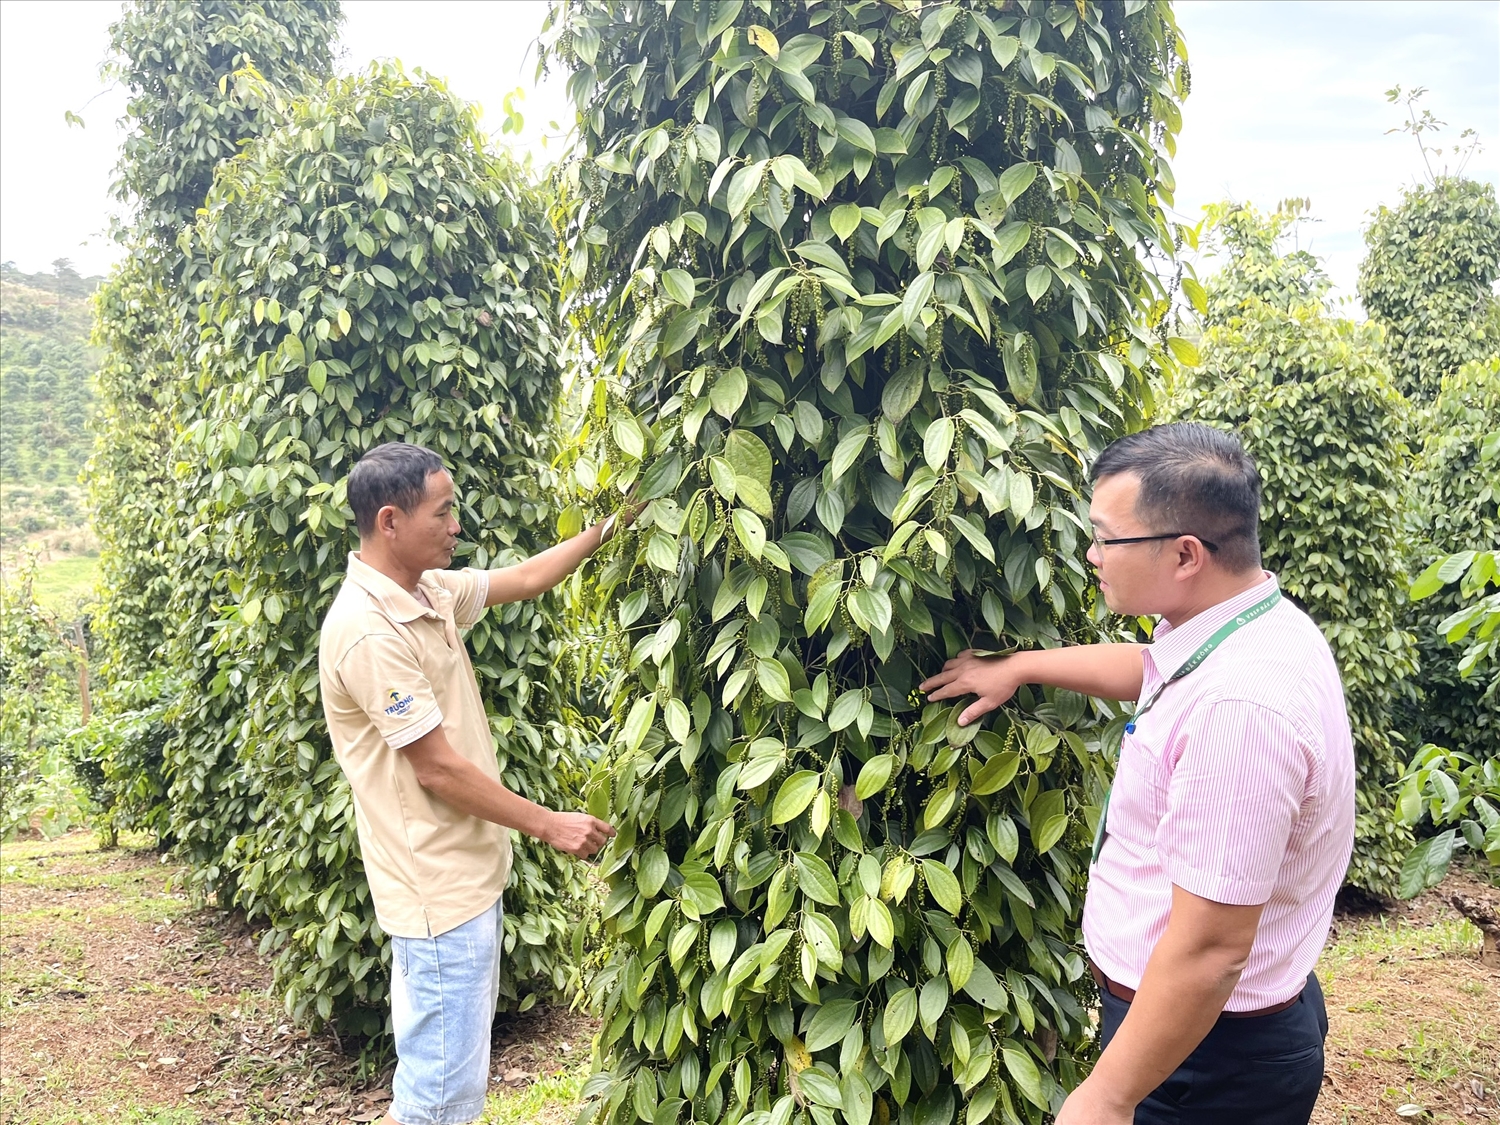 Nhờ vốn vay ưu đãi từ NHCSXH, gia đình anh Nguyễn Văn Minh ở thôn 1, xã Trường Xuân, huyện Đắk Song có thêm điều kiện mở rộng sản xuất cây tiêu, cà phê, mang lại hiệu quả kinh tế cao.